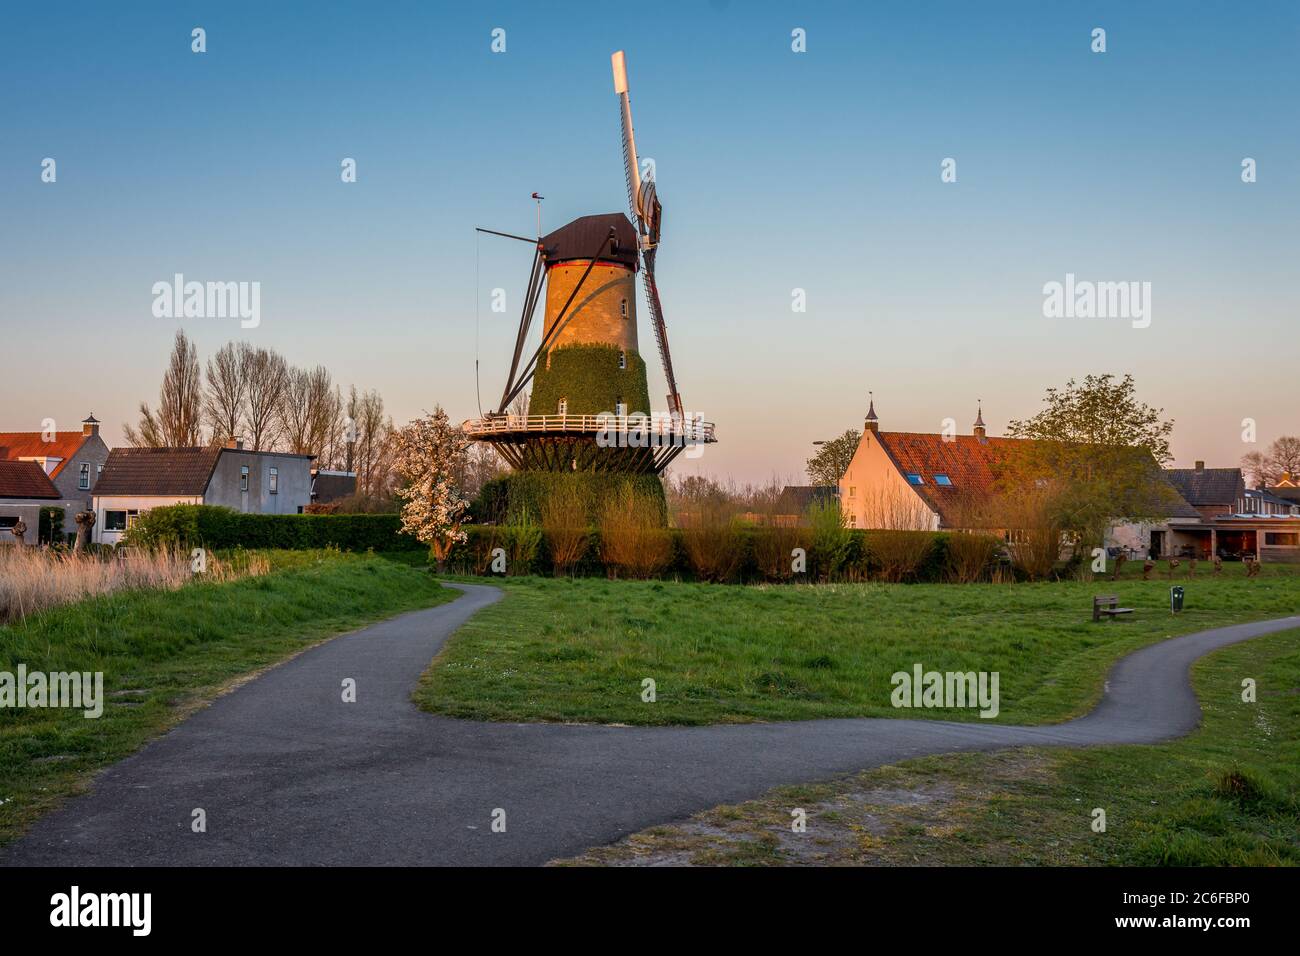 Scenario pittoresco con un mulino a vento chiamato 'De Arend' a Terheijden, Paesi Bassi Foto Stock